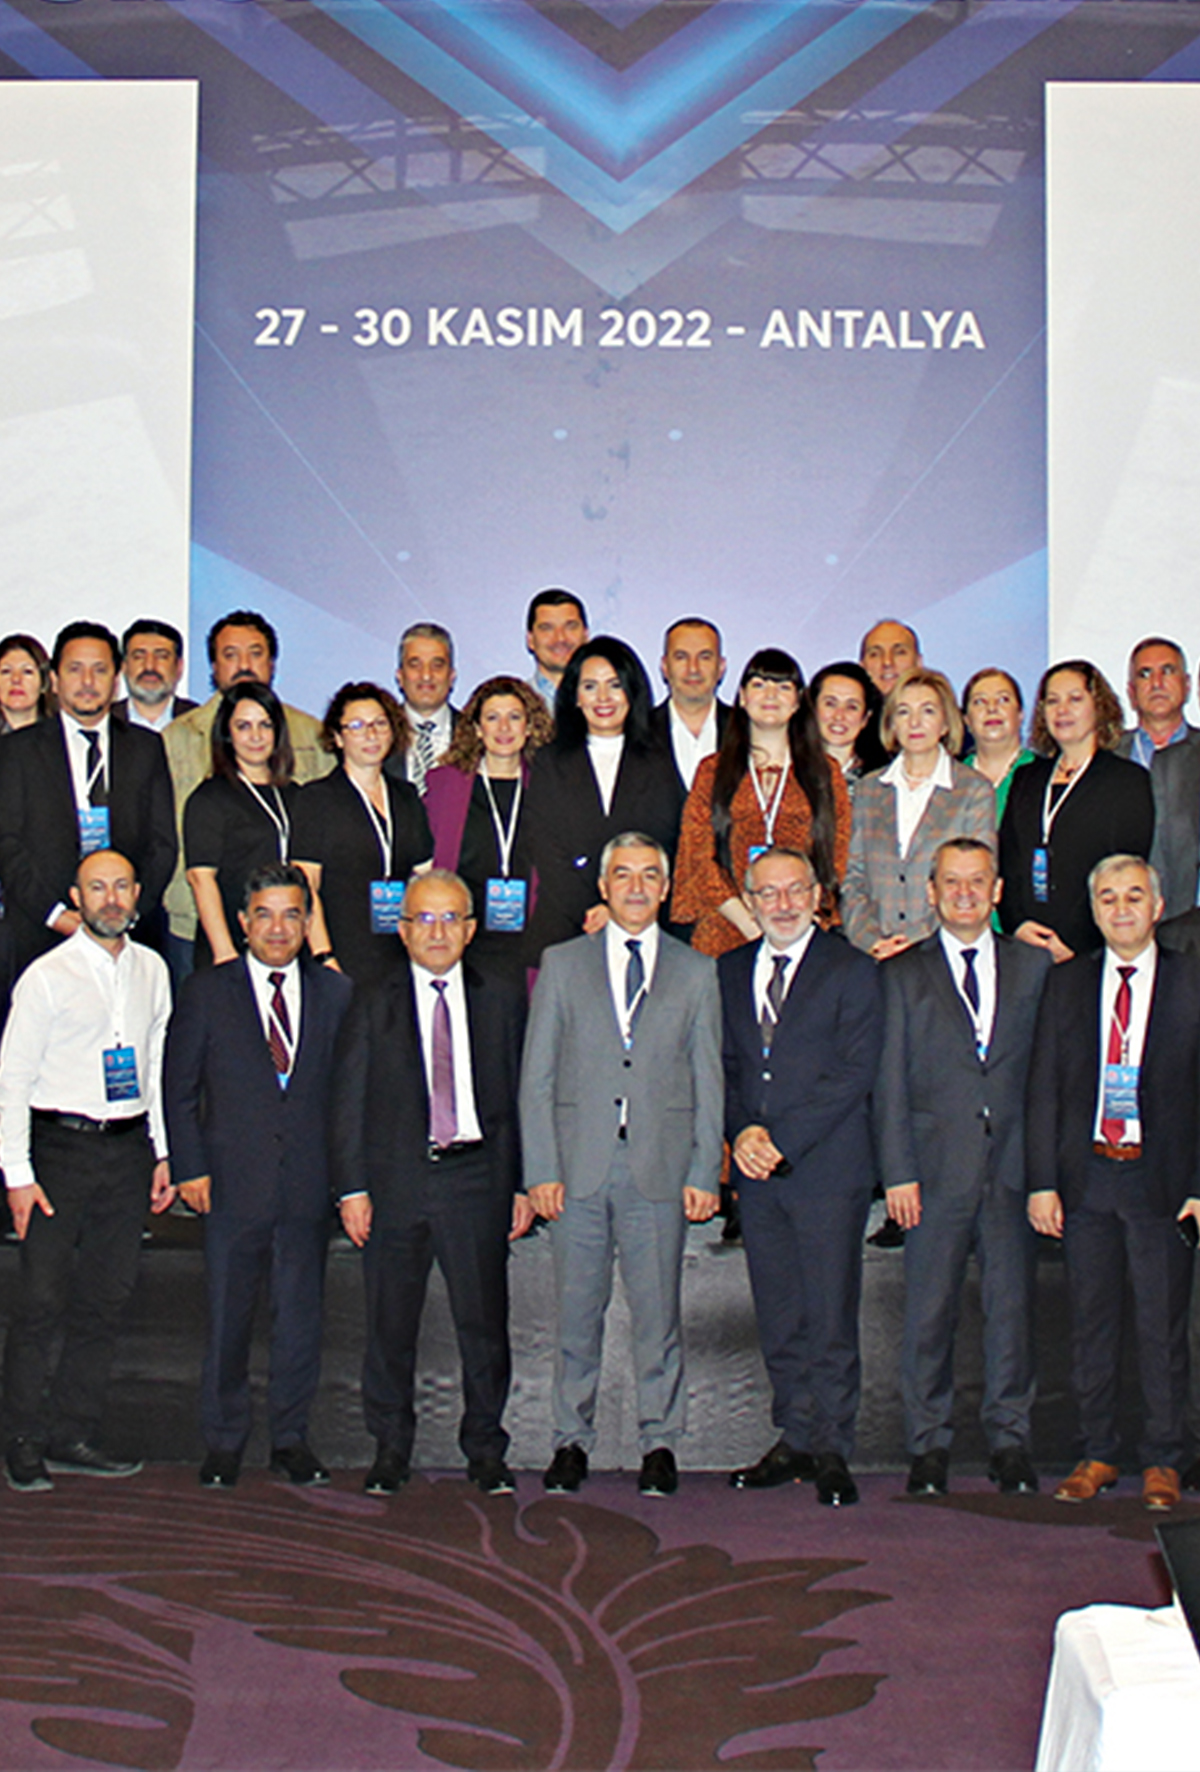 VİSAD-Bakanlık-Sektör buluşması Antalya’da düzenlendi